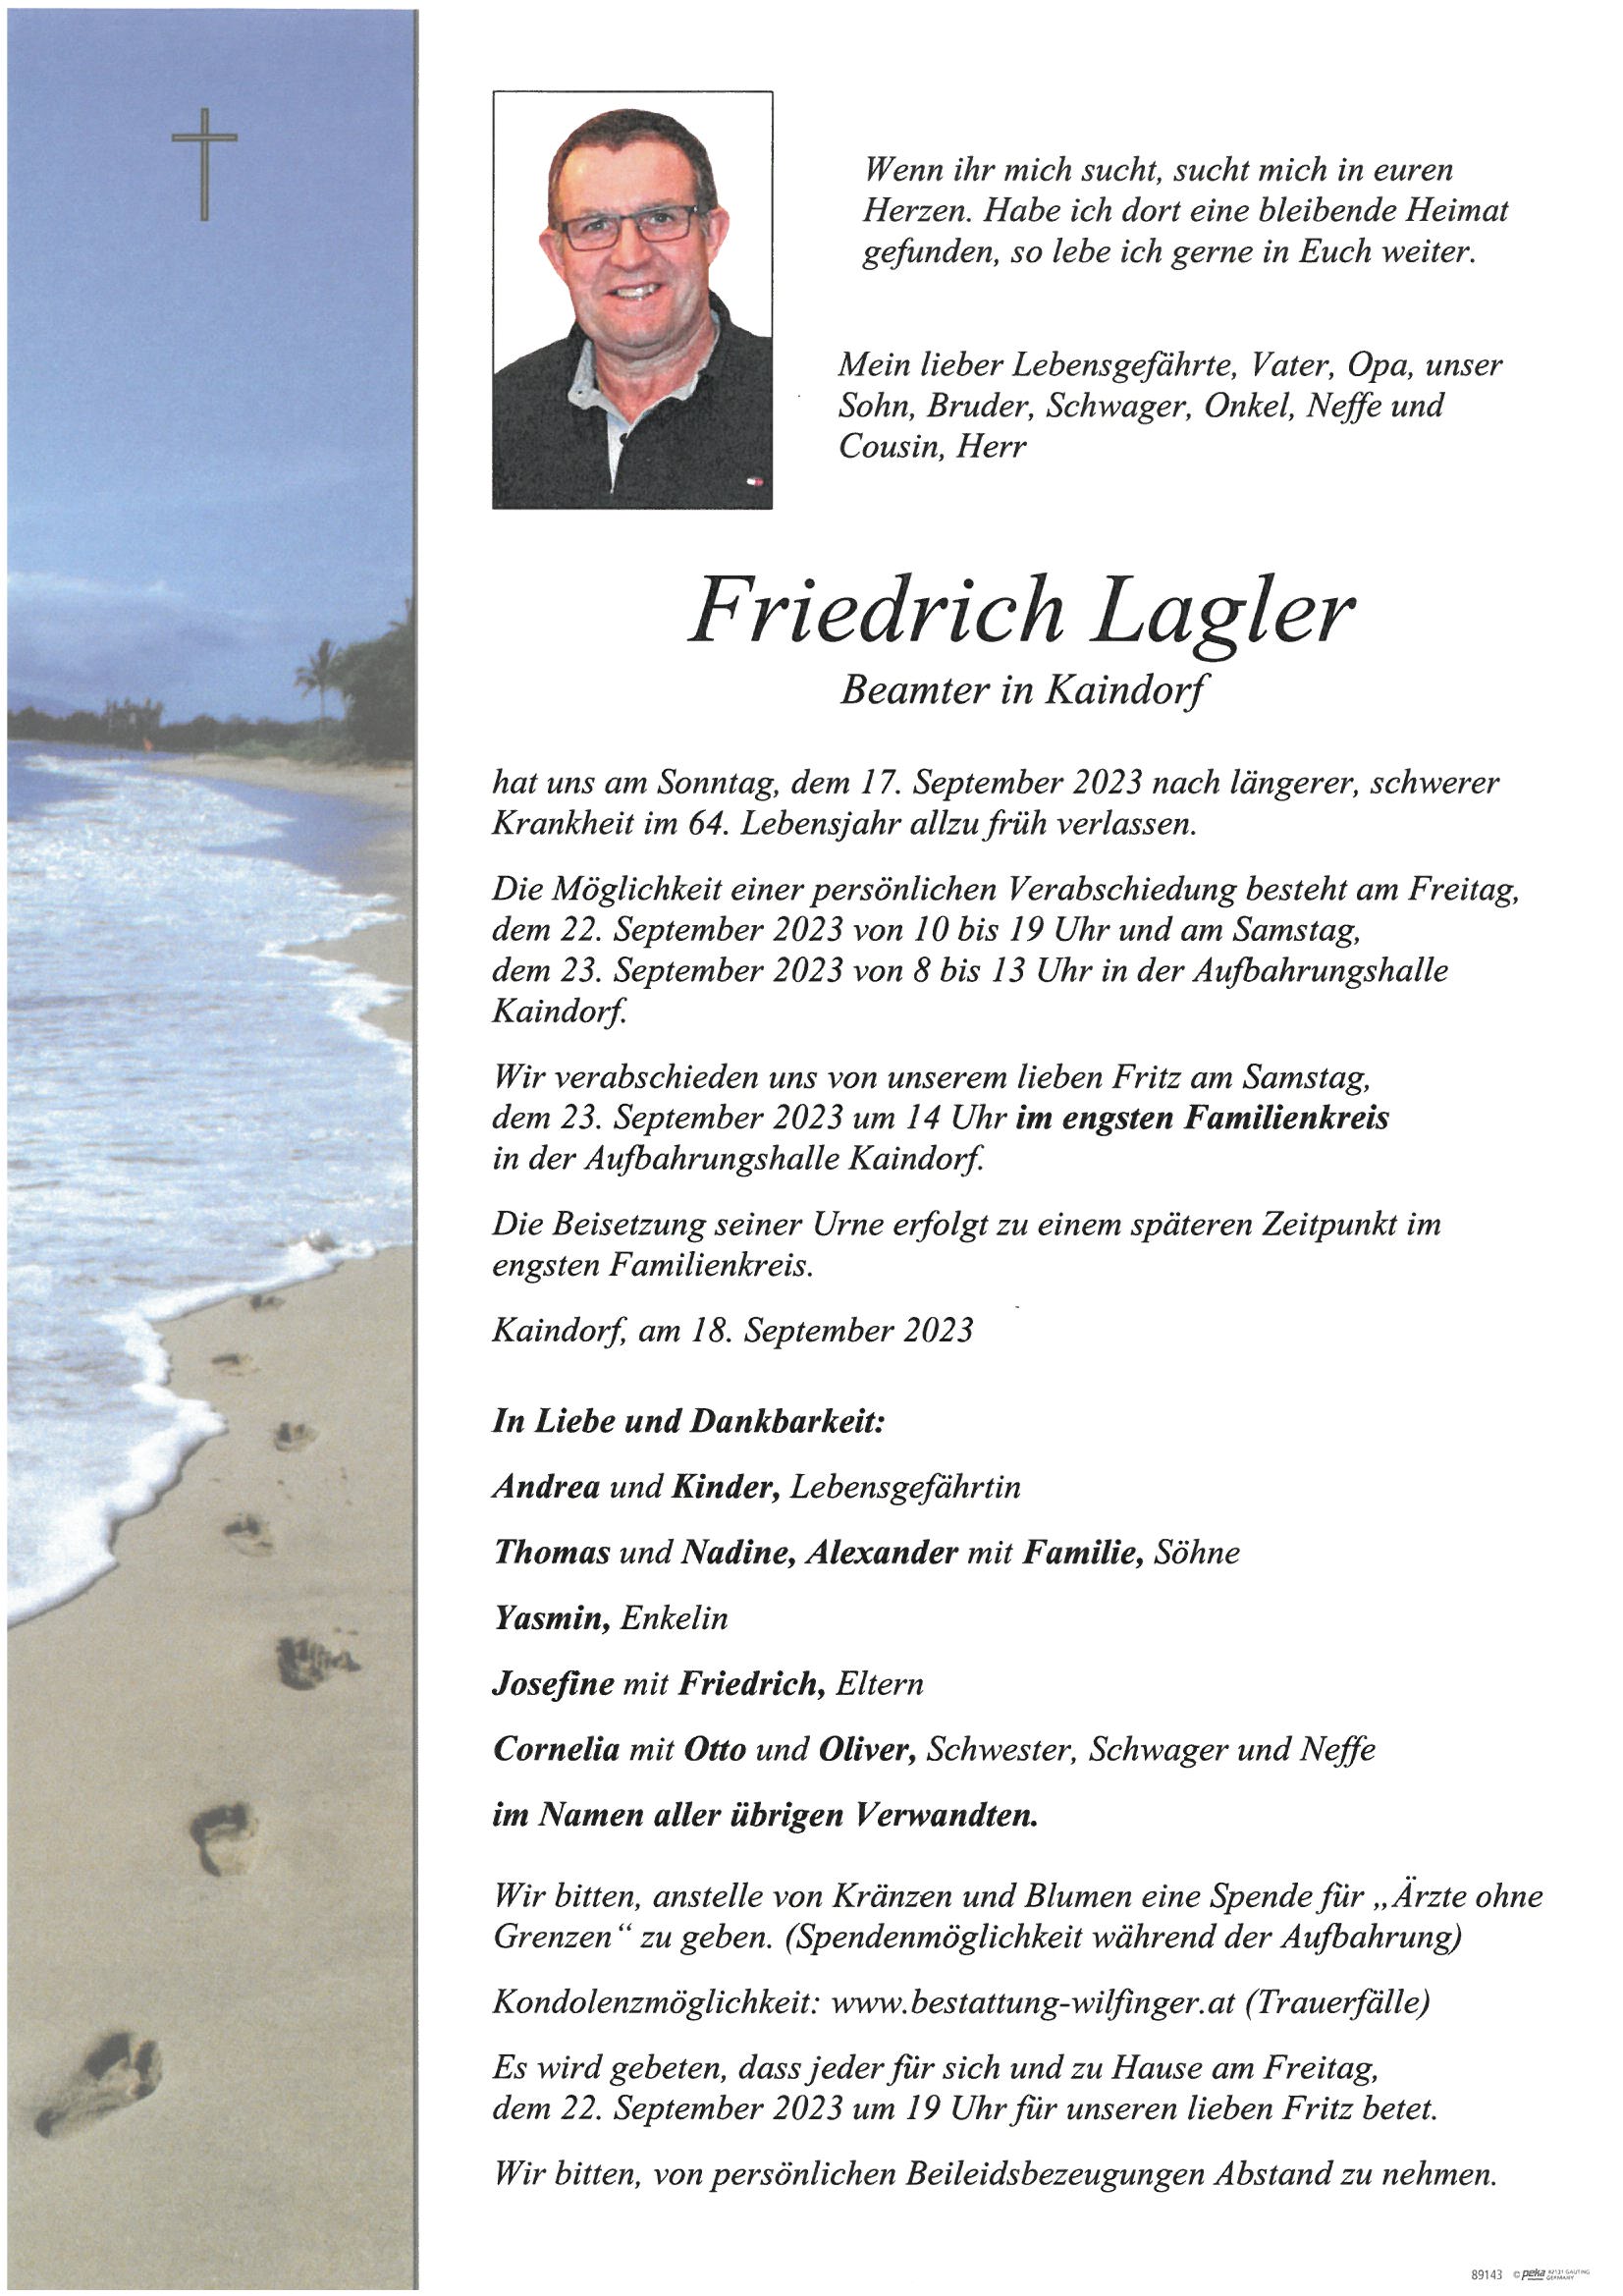 Friedrich Lagler, Kaindorf